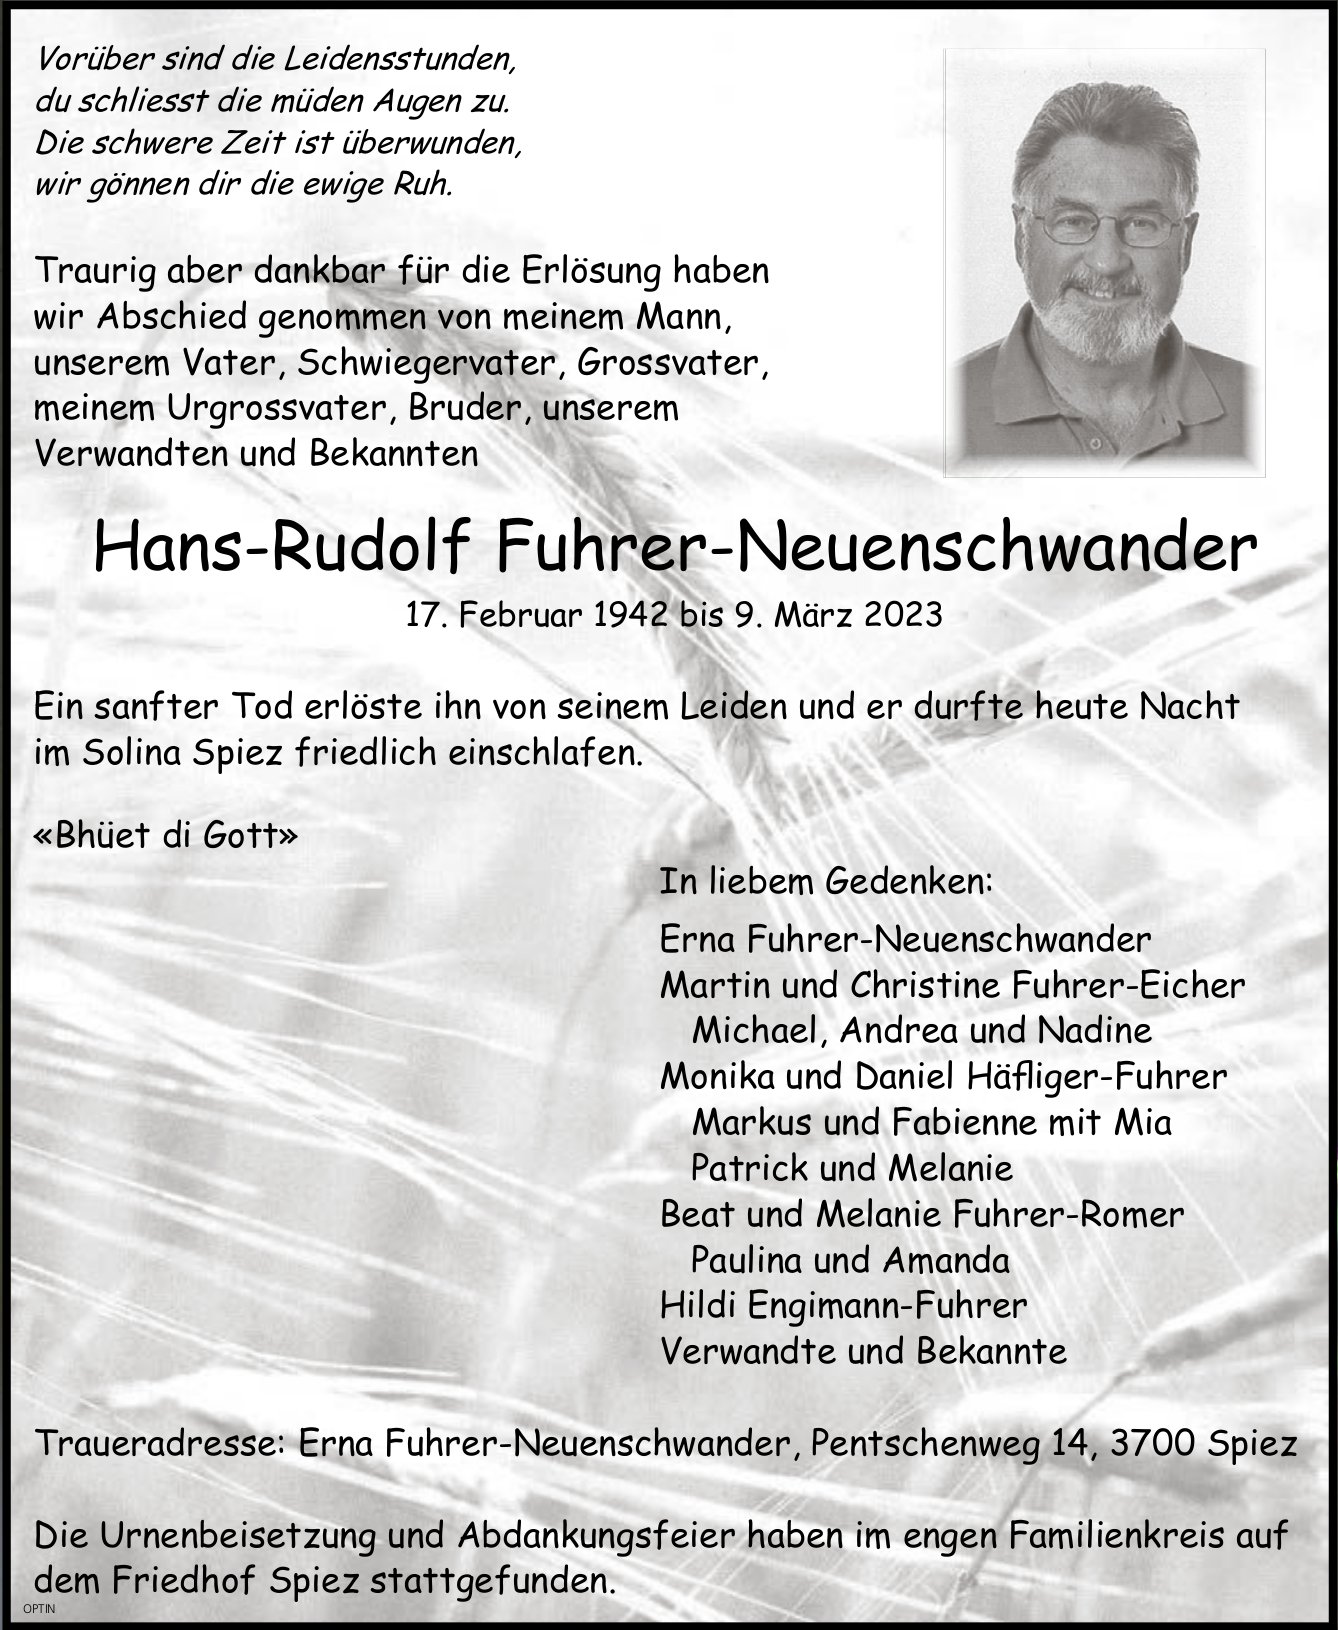 Hans-Rudolf Fuhrer-Neuenschwander, März 2023 / TA